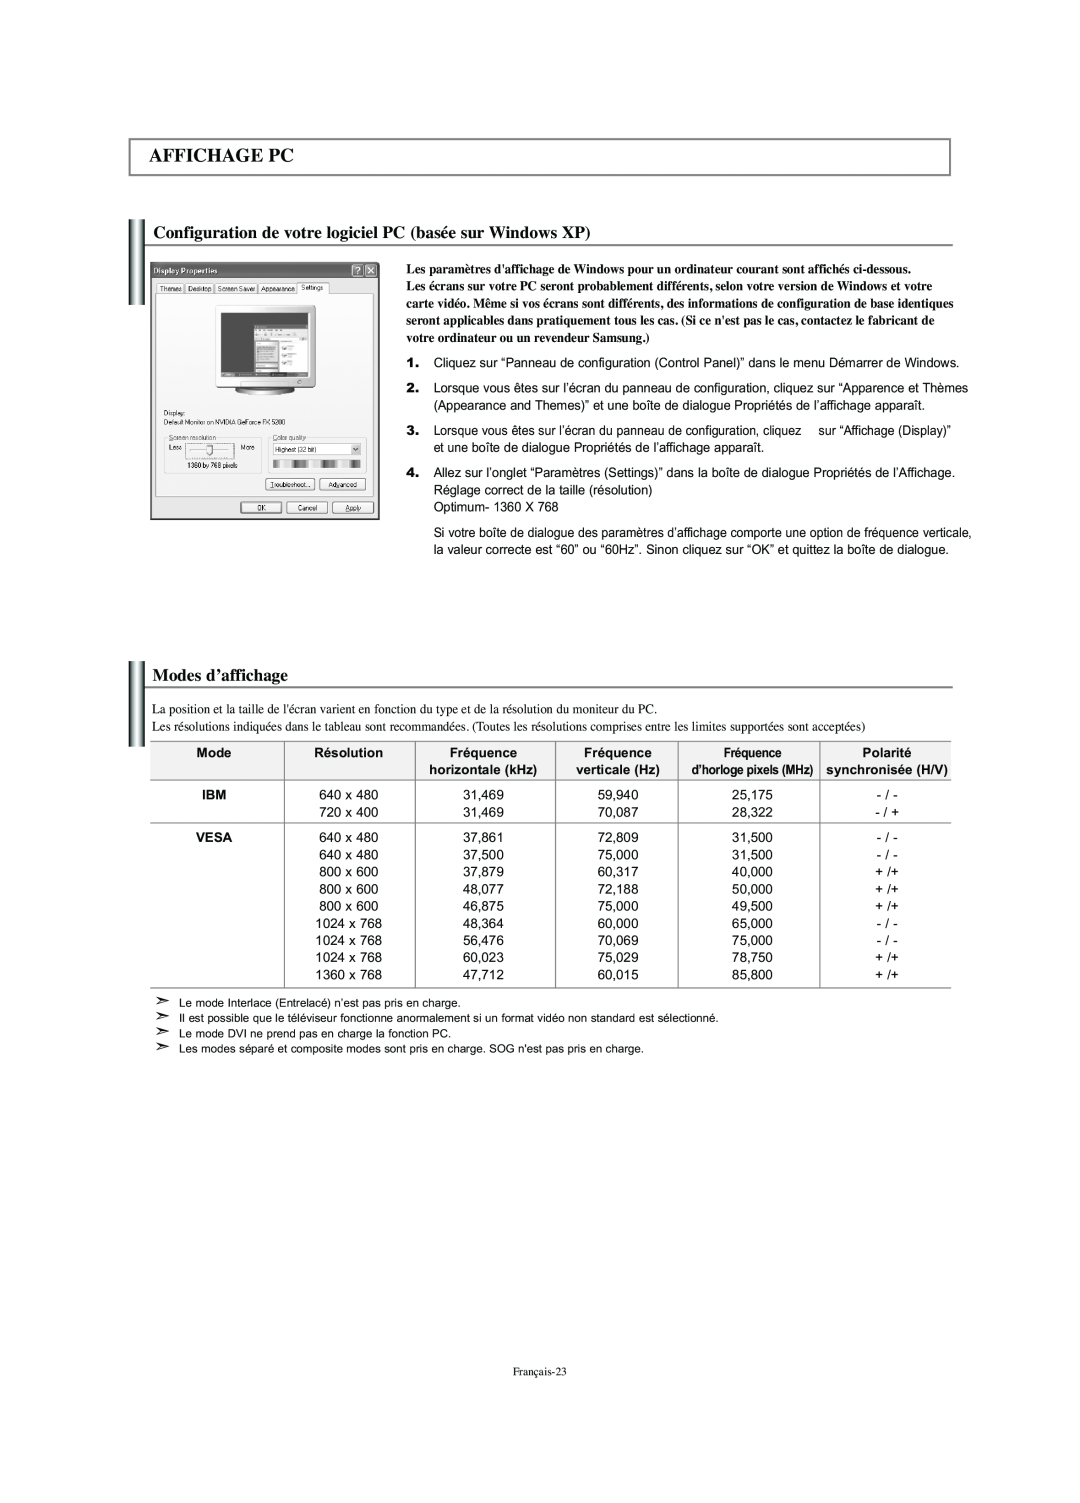 Samsung LN-S2341W manual Affichage Pc, Configuration de votre logiciel PC basée sur Windows XP, Modes d’affichage 